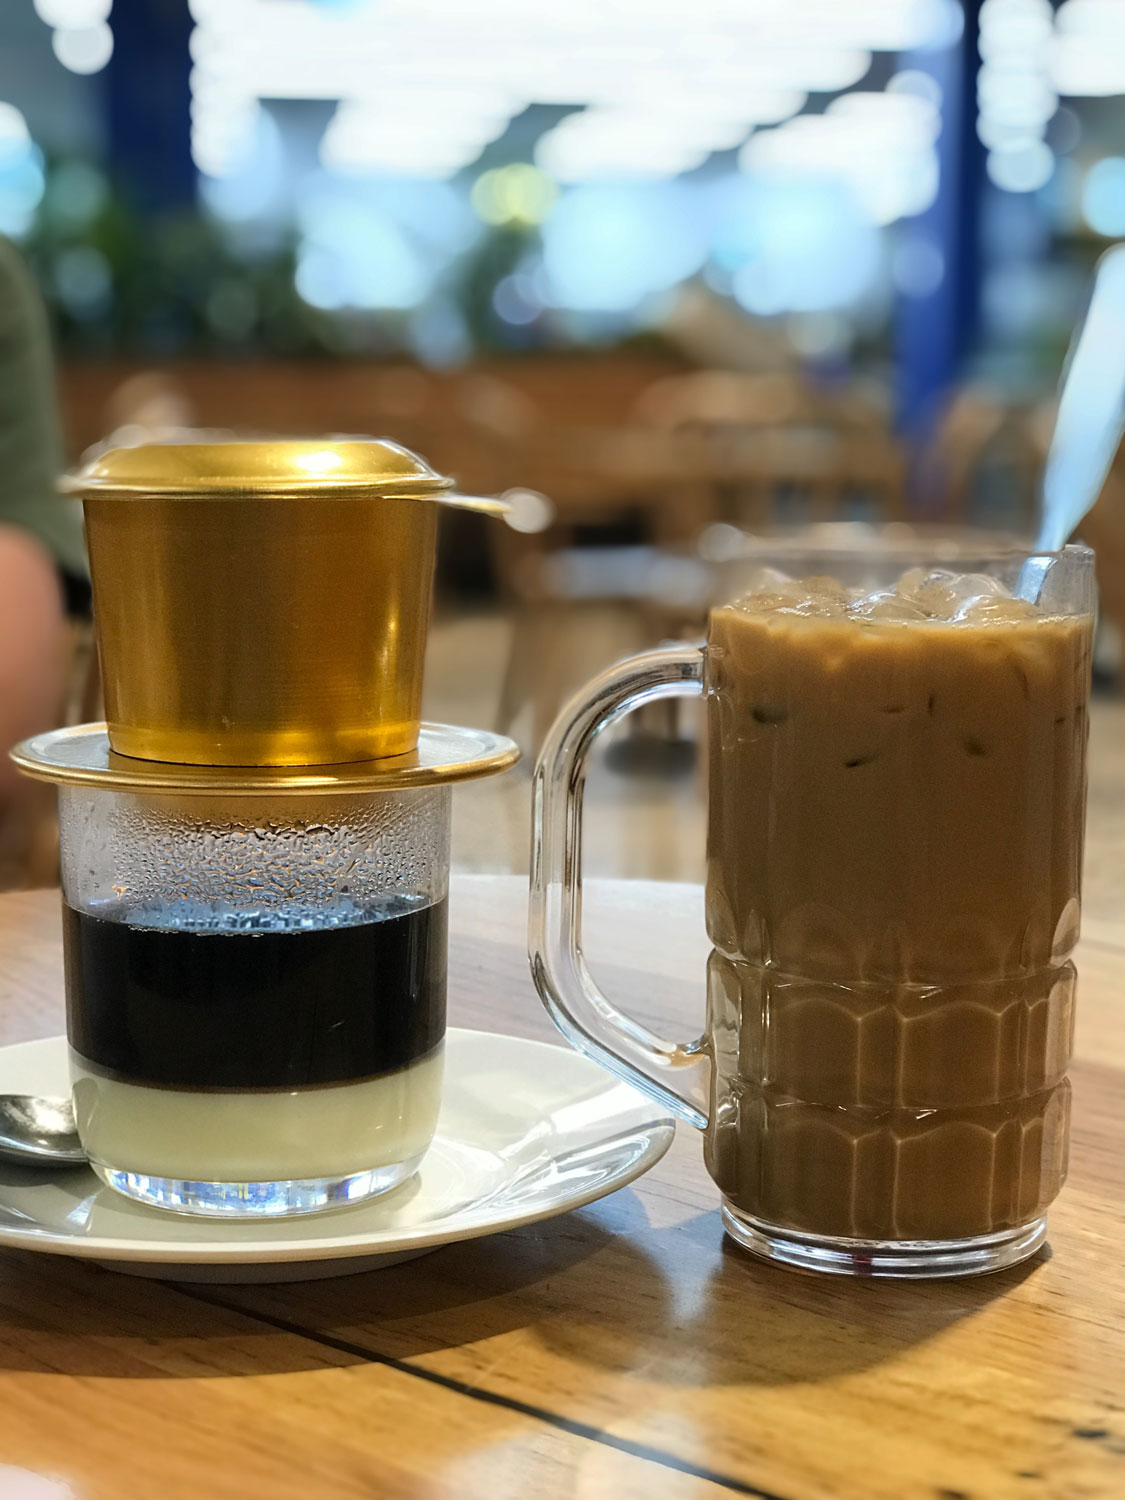 Best Vietnamese iced coffee in Darwin | Darwin Foodies